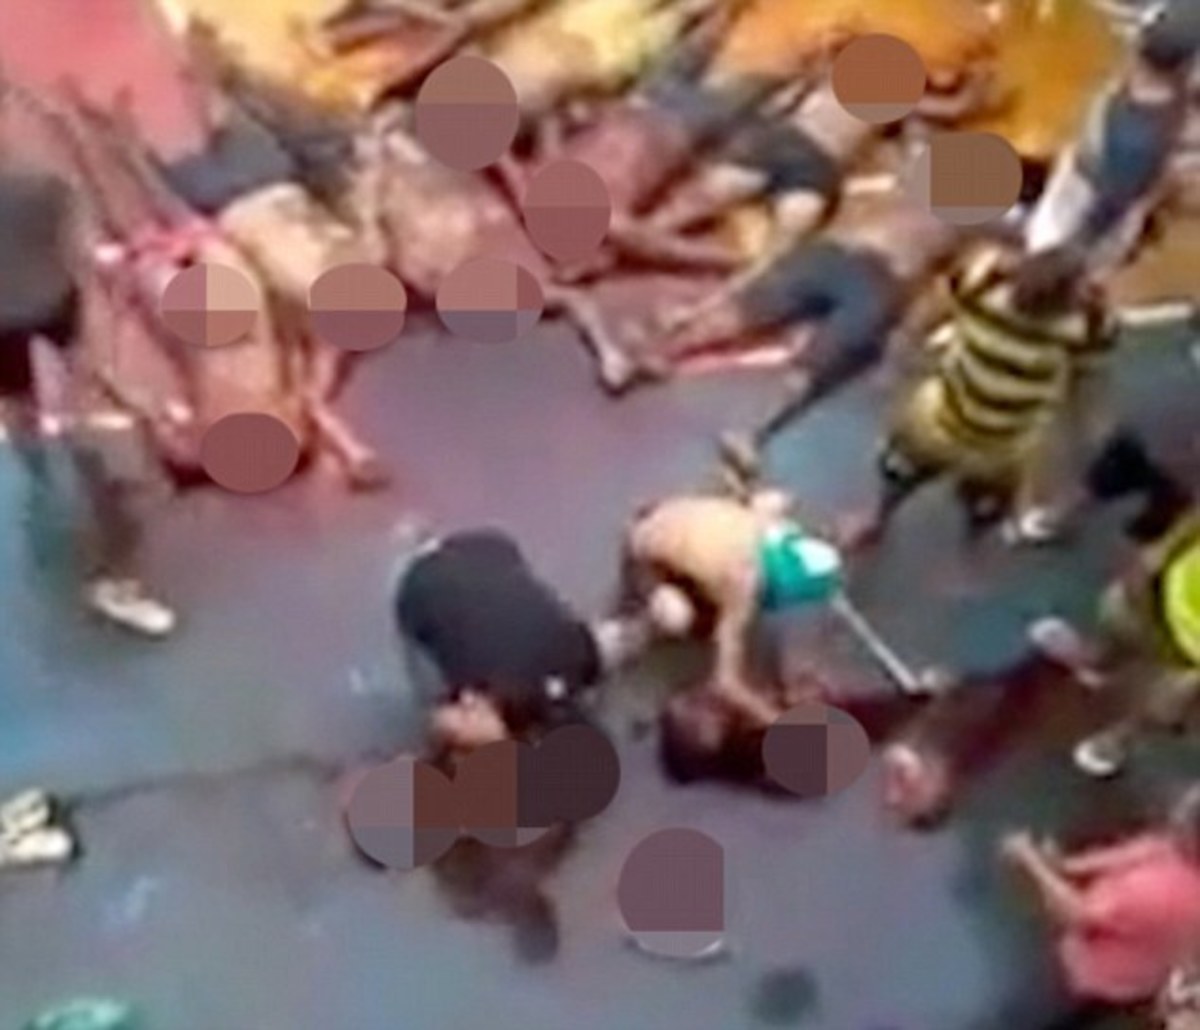 Βίντεο σοκ από τις φυλακές της Βραζιλίας: Αποκεφαλισμοί, αίματα και πτώματα παντού